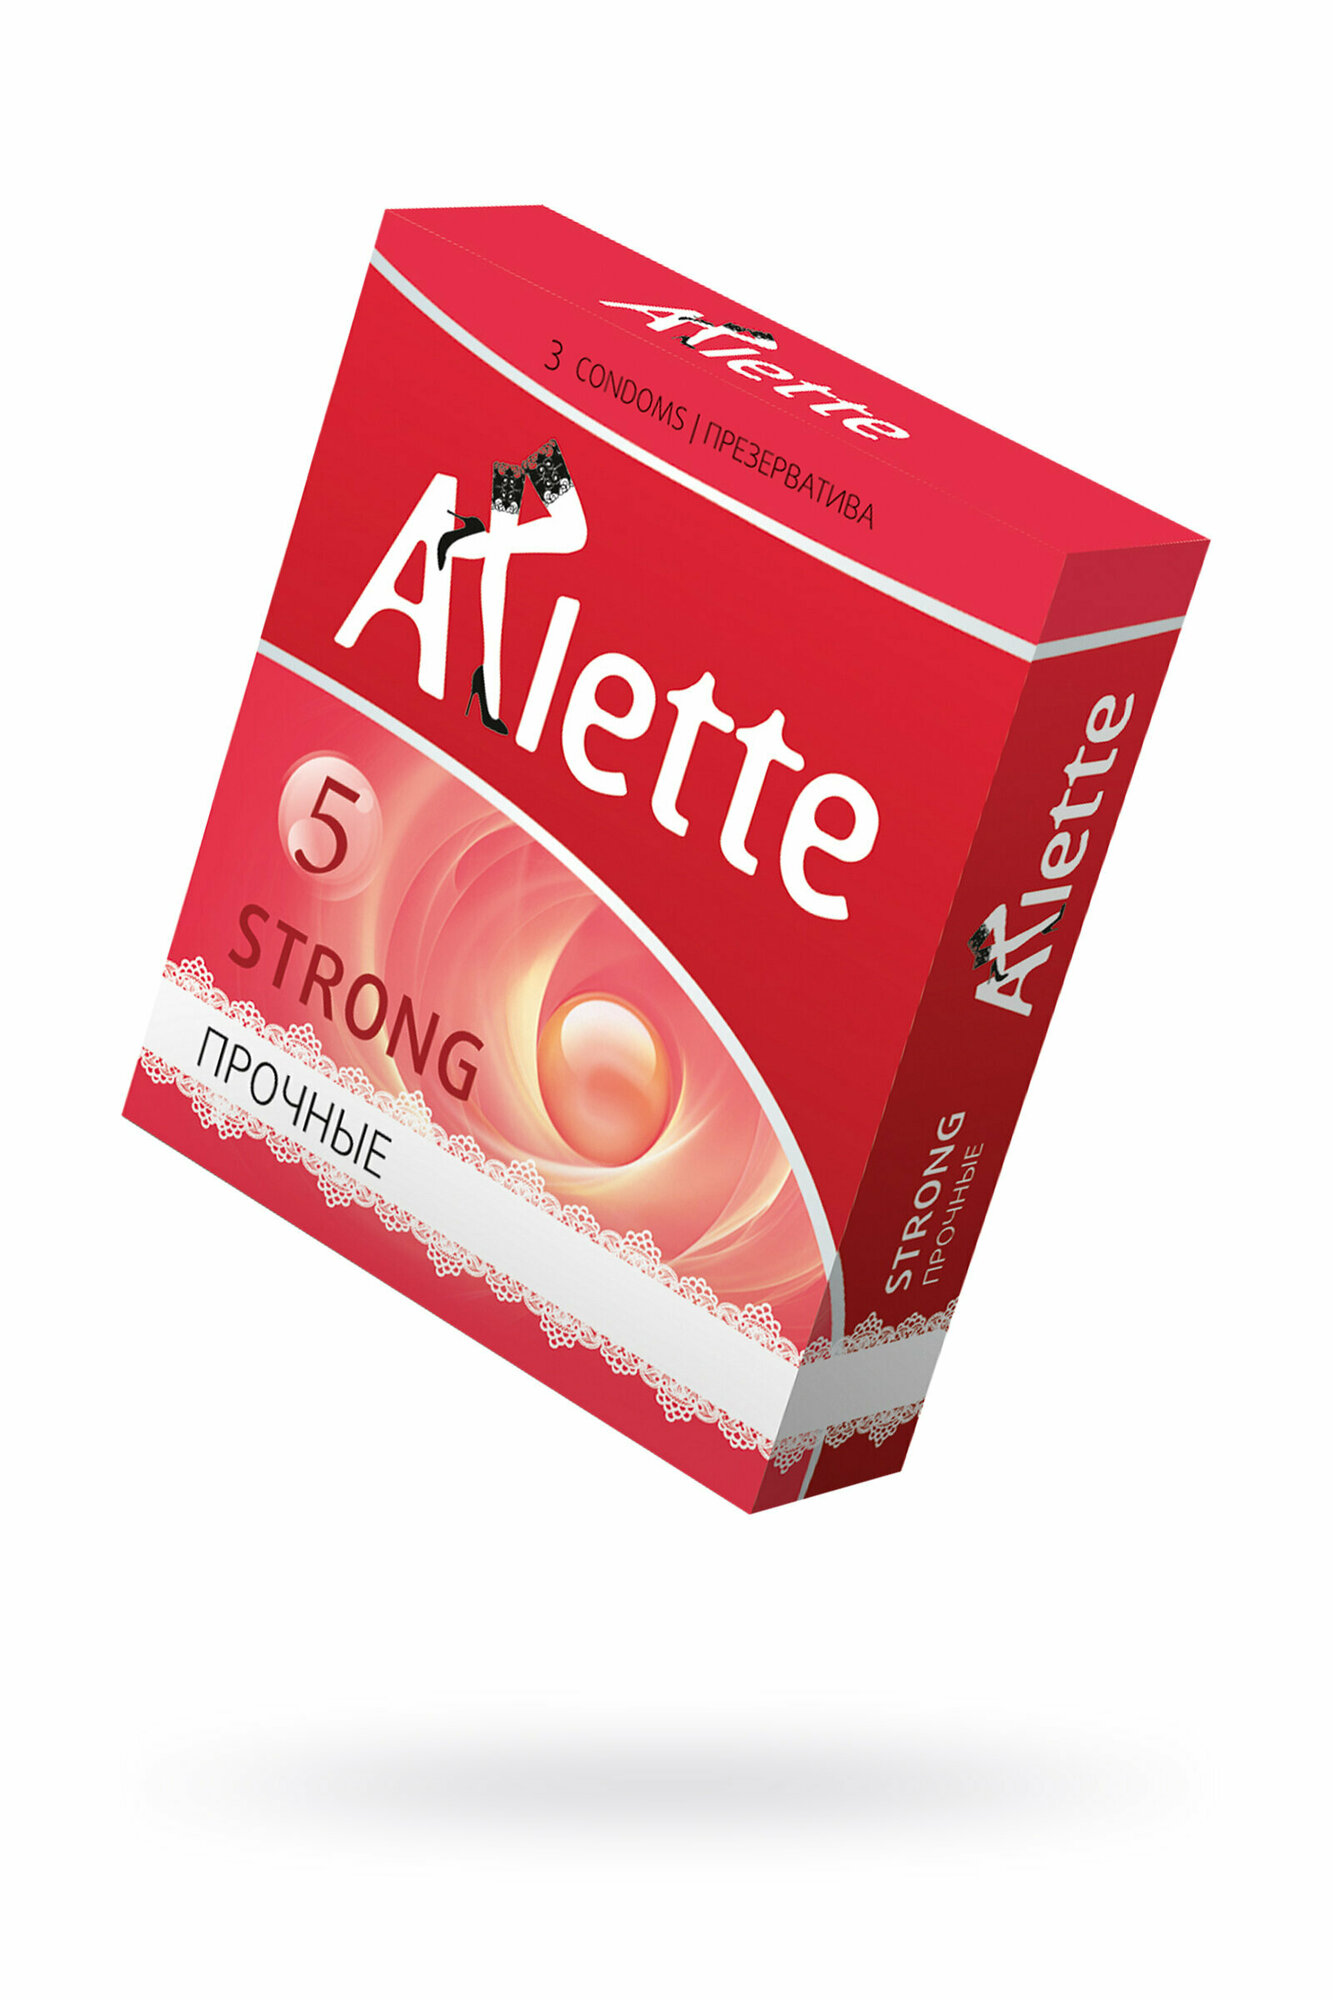 Прочные презервативы Arlette Strong 6 шт.